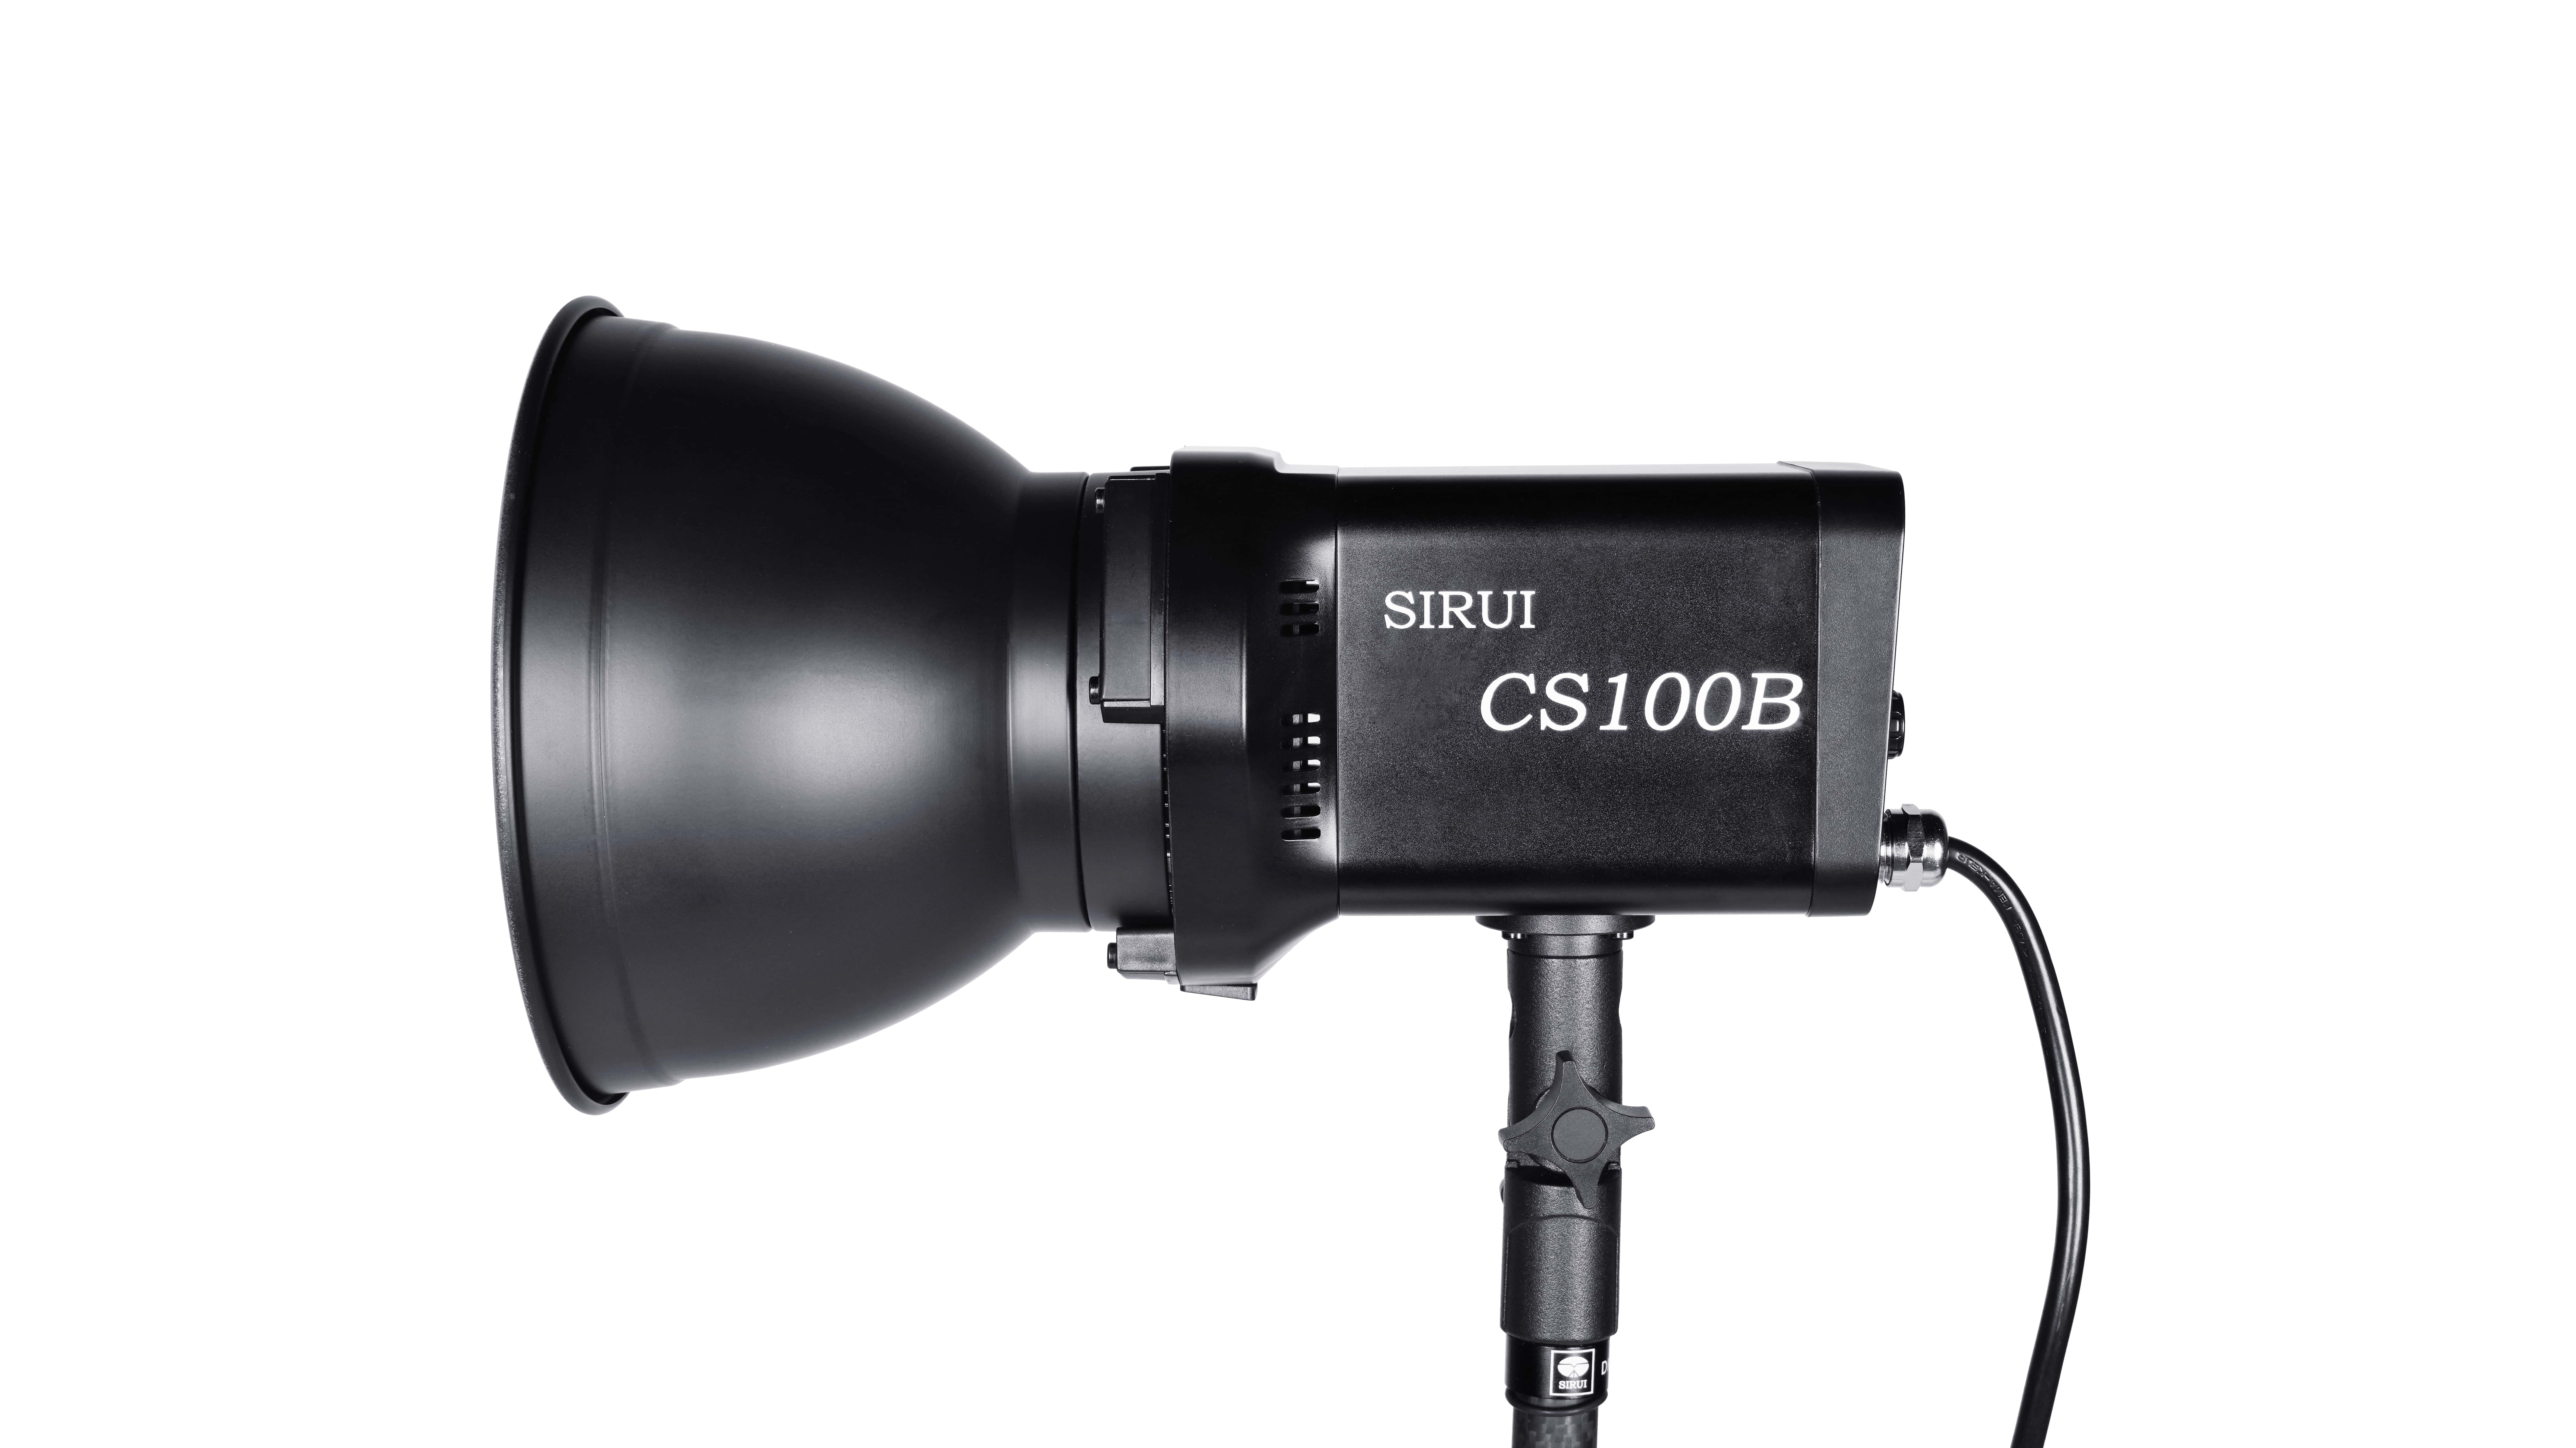 SIRUI CS100B Bi-Color LED Dauerlicht / Studioleuchte 100W mit Bowens Mount